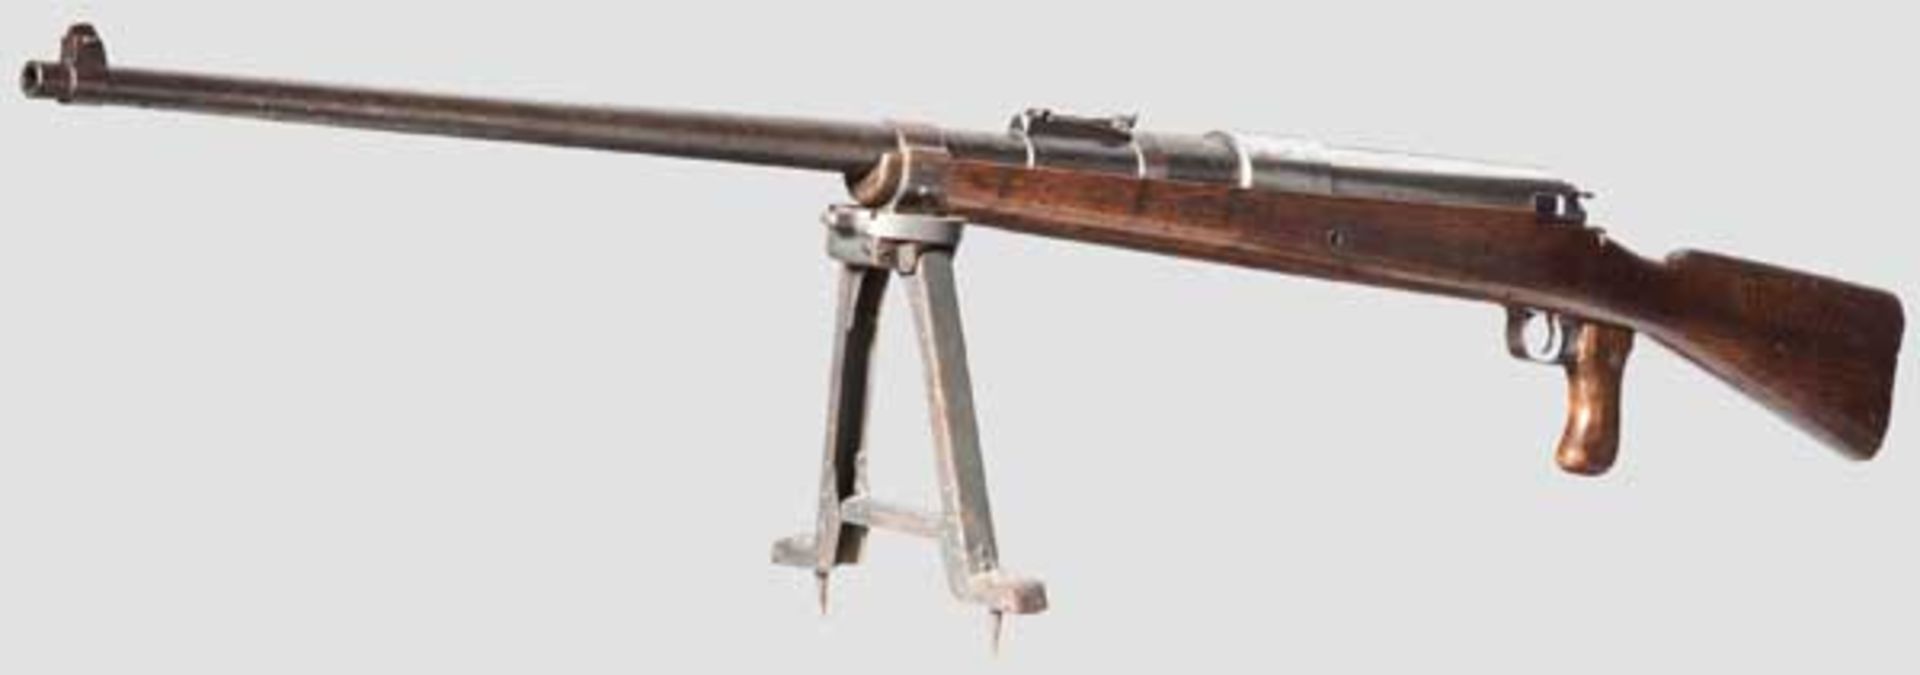 Tankgewehr Mauser M 1918 Kal. 13 x 93 HR (Halbrand), Nr. 569. Nummerngleich bis auf Pistolengriff. - Bild 2 aus 5